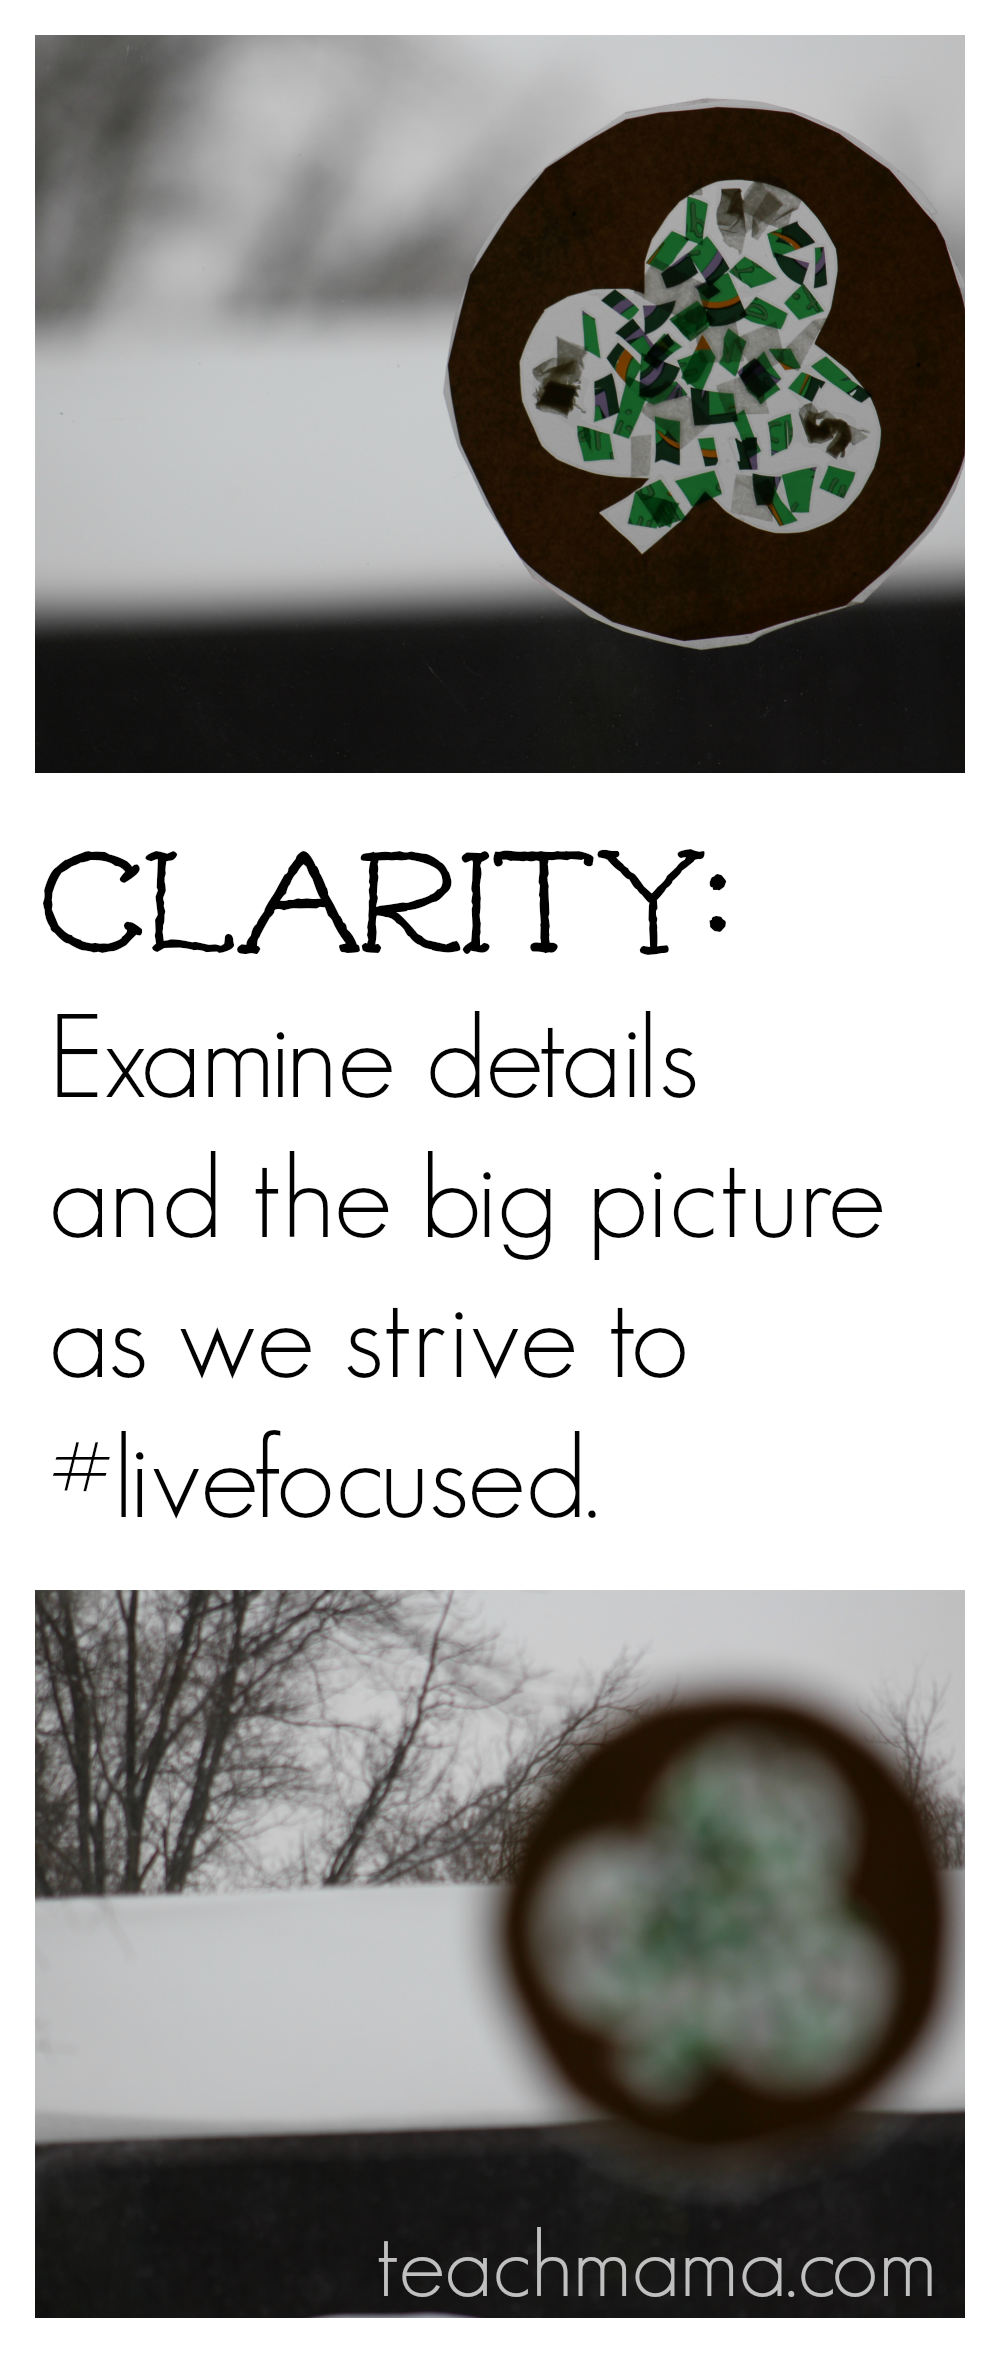 clarity  livefocused  teachmama.com